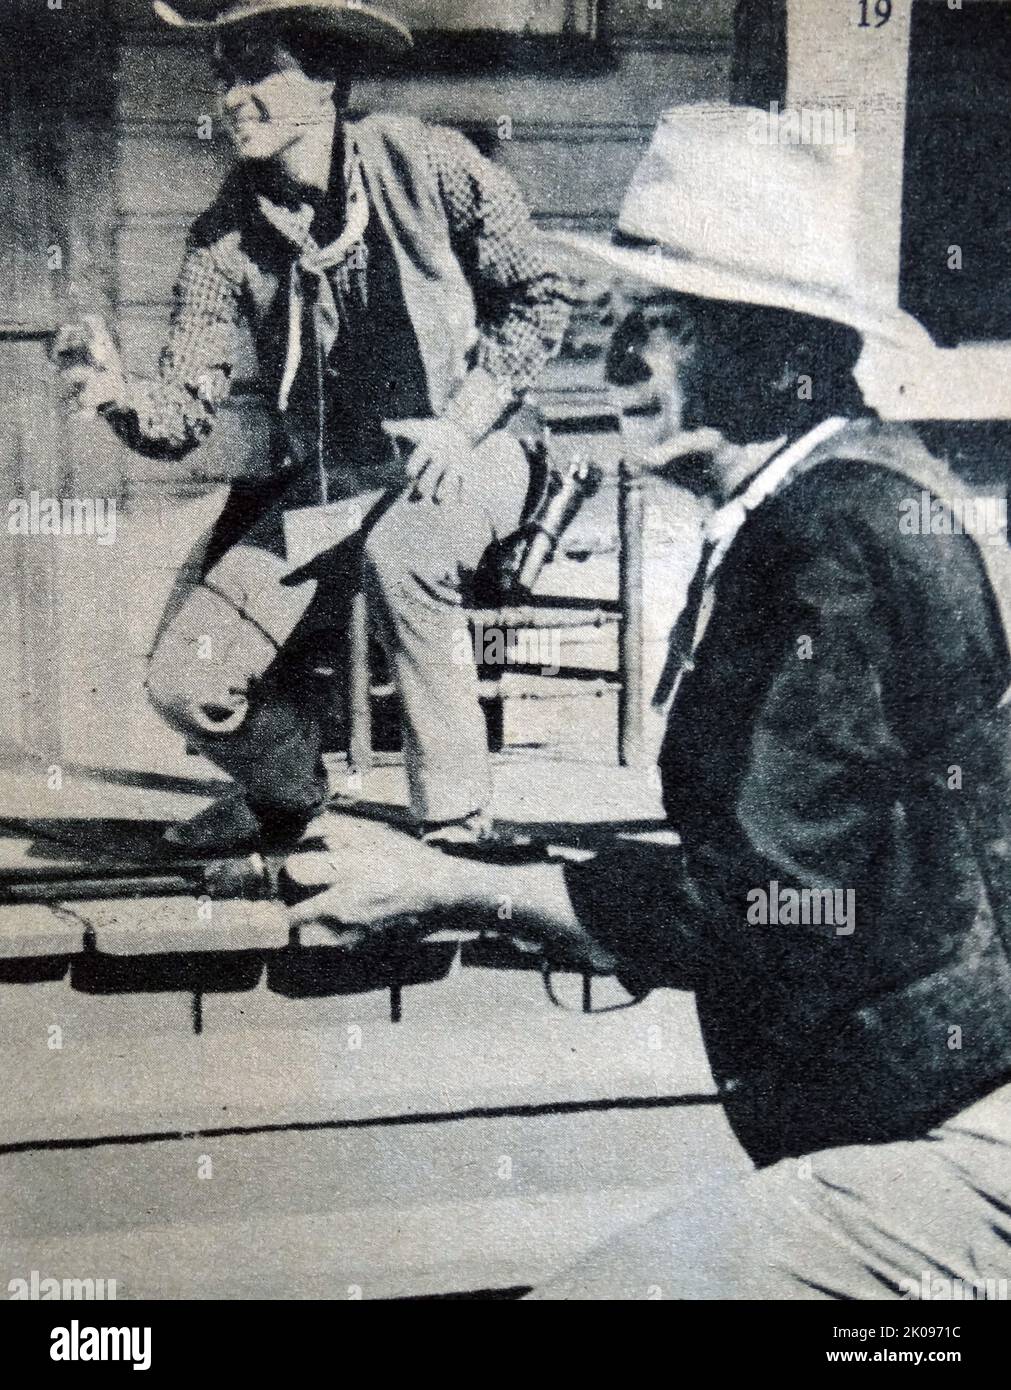 Ricky Nelson y John Wayne. Eric Hilliard Nelson (8 de mayo de 1940 - 31 de diciembre de 1985), conocido profesionalmente como Ricky Nelson, fue un cantante, pionero del pop, músico y actor estadounidense. Marion Robert Morrison (26 de mayo de 1907 - 11 de junio de 1979), conocido profesionalmente como John Wayne y apodado Duke, fue un actor y cineasta estadounidense que se convirtió en un icono popular a través de sus papeles protagonistas en películas realizadas durante la Edad de Oro de Hollywood, especialmente en películas occidentales y de guerra. Foto de stock